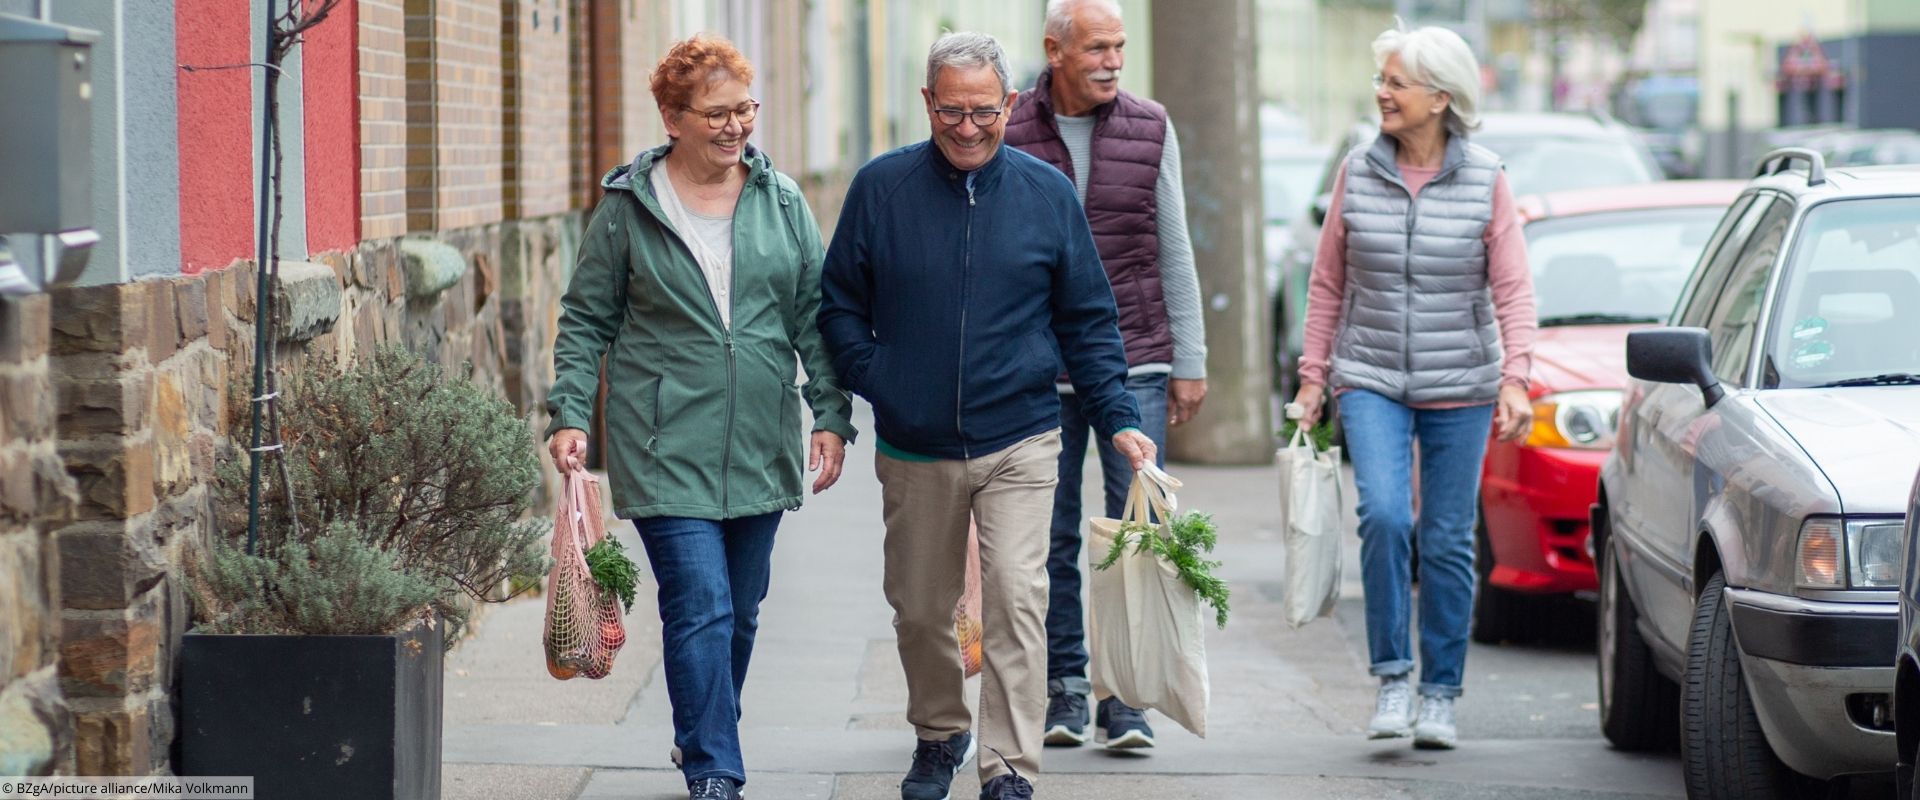 Vier ältere Erwachsener laufen gut gelaunt mit Einkaufstaschen einem Gehweg entlang.